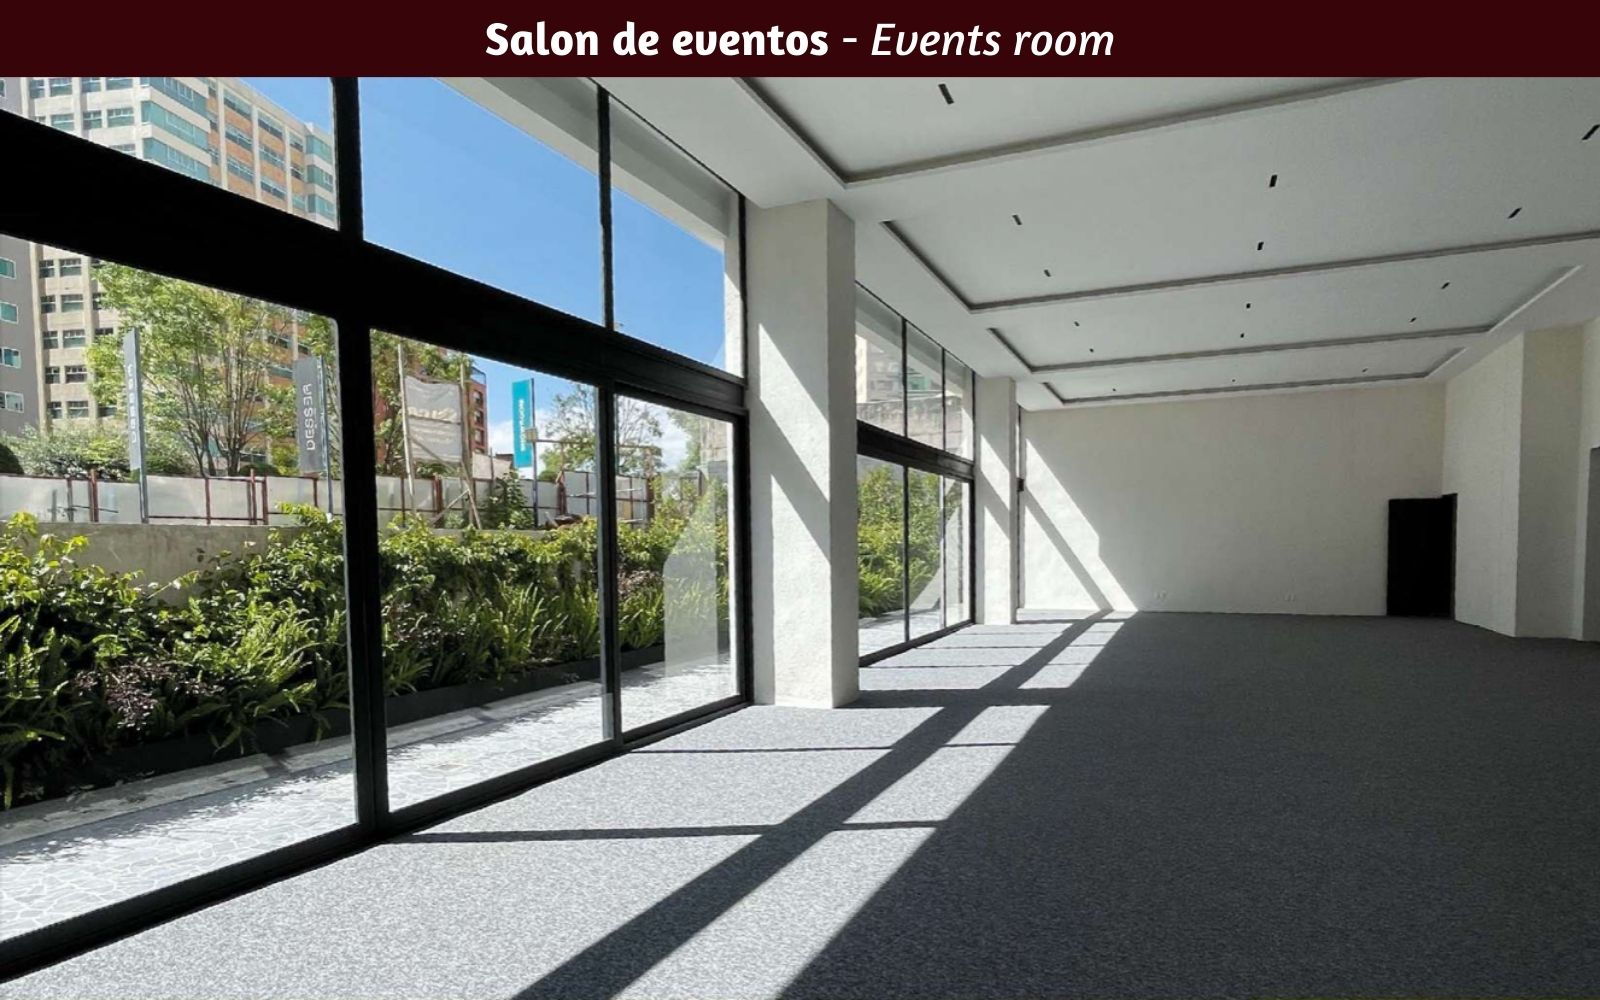 Departamento de 269 m2 con family room, cuarto de servicio, area de lavado, 30 amenidades, 13,000 m2 de areas verdes, Fuentes del Pedregal